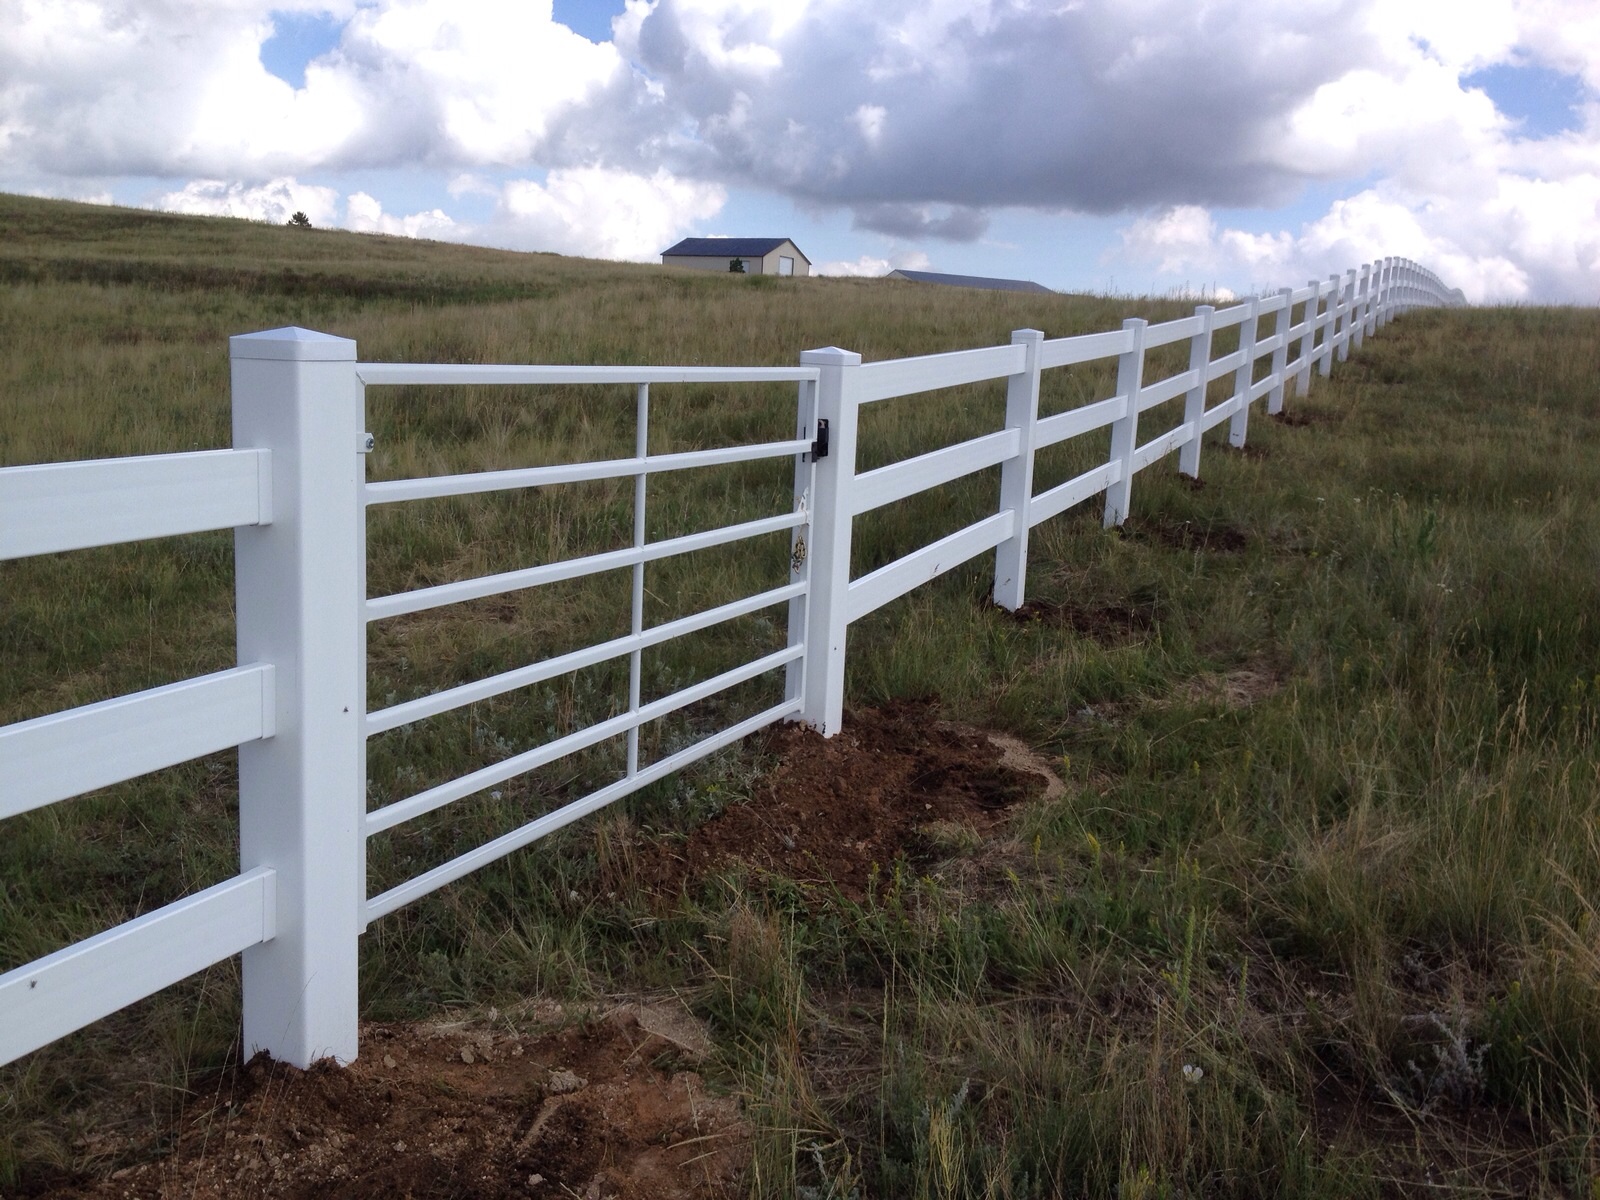 fence northern colorado